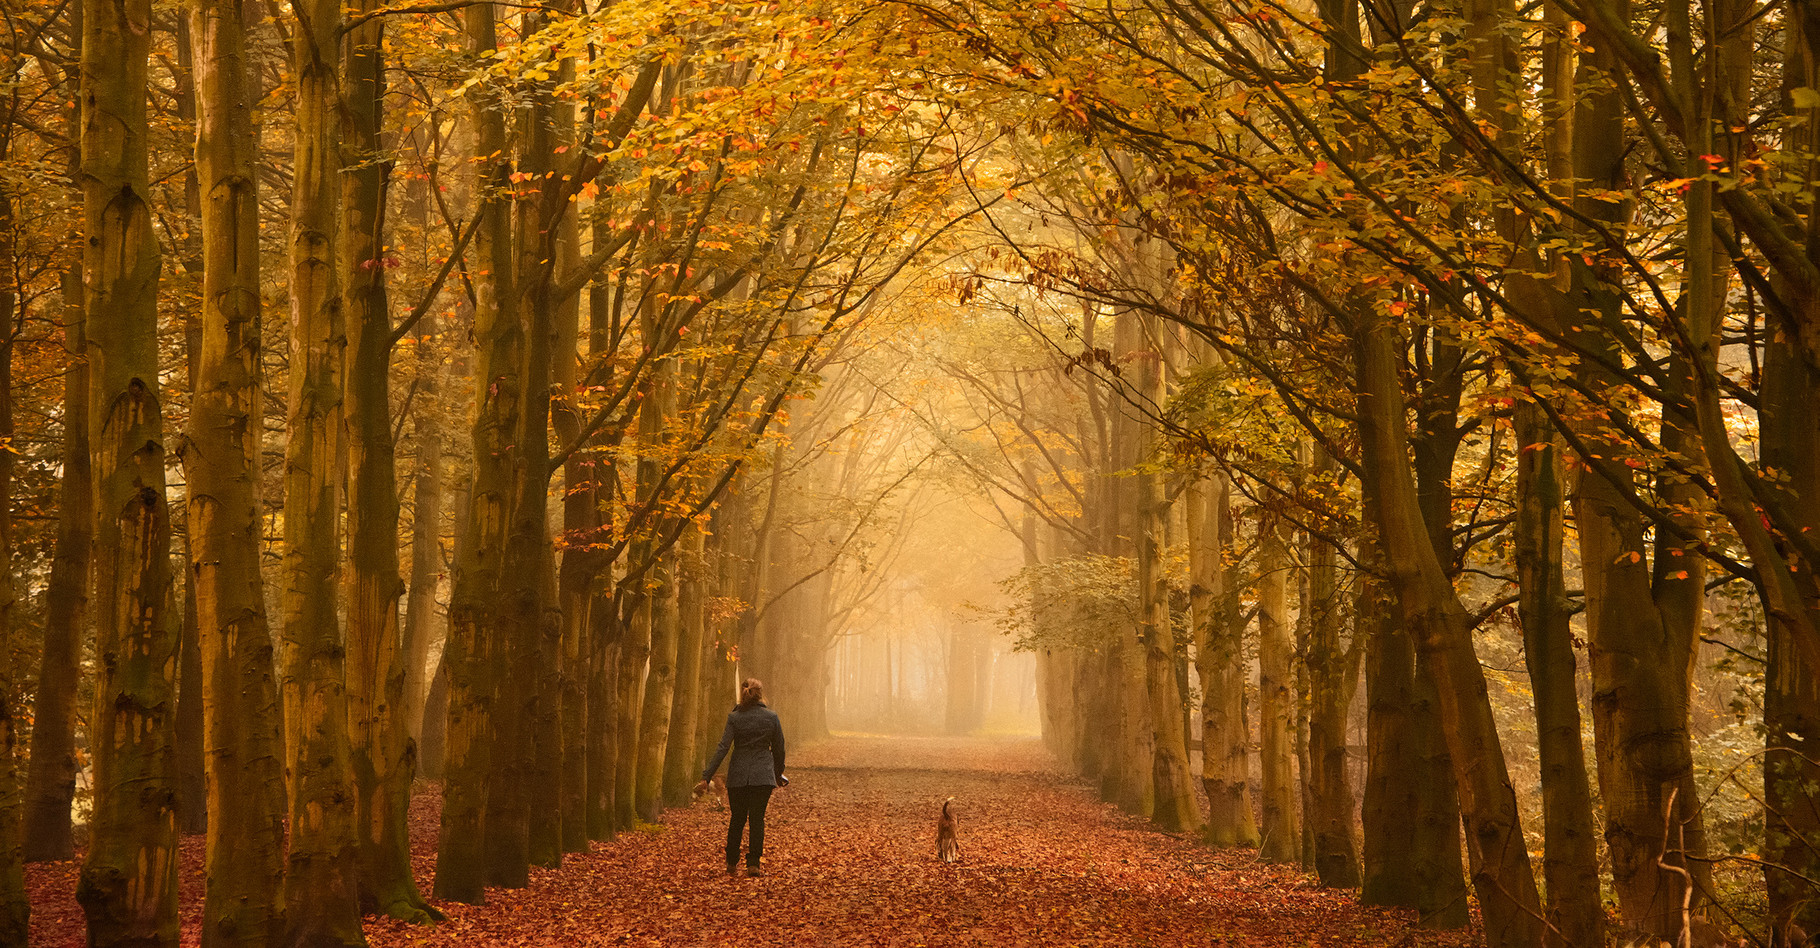 Pour les habitants de l'hémisphère Nord, l'équinoxe d'automne marque la fin de l'été et le début d'une nouvelle saison lors de laquelle les arbres perdent leurs feuilles. © iPics, Shutterstock